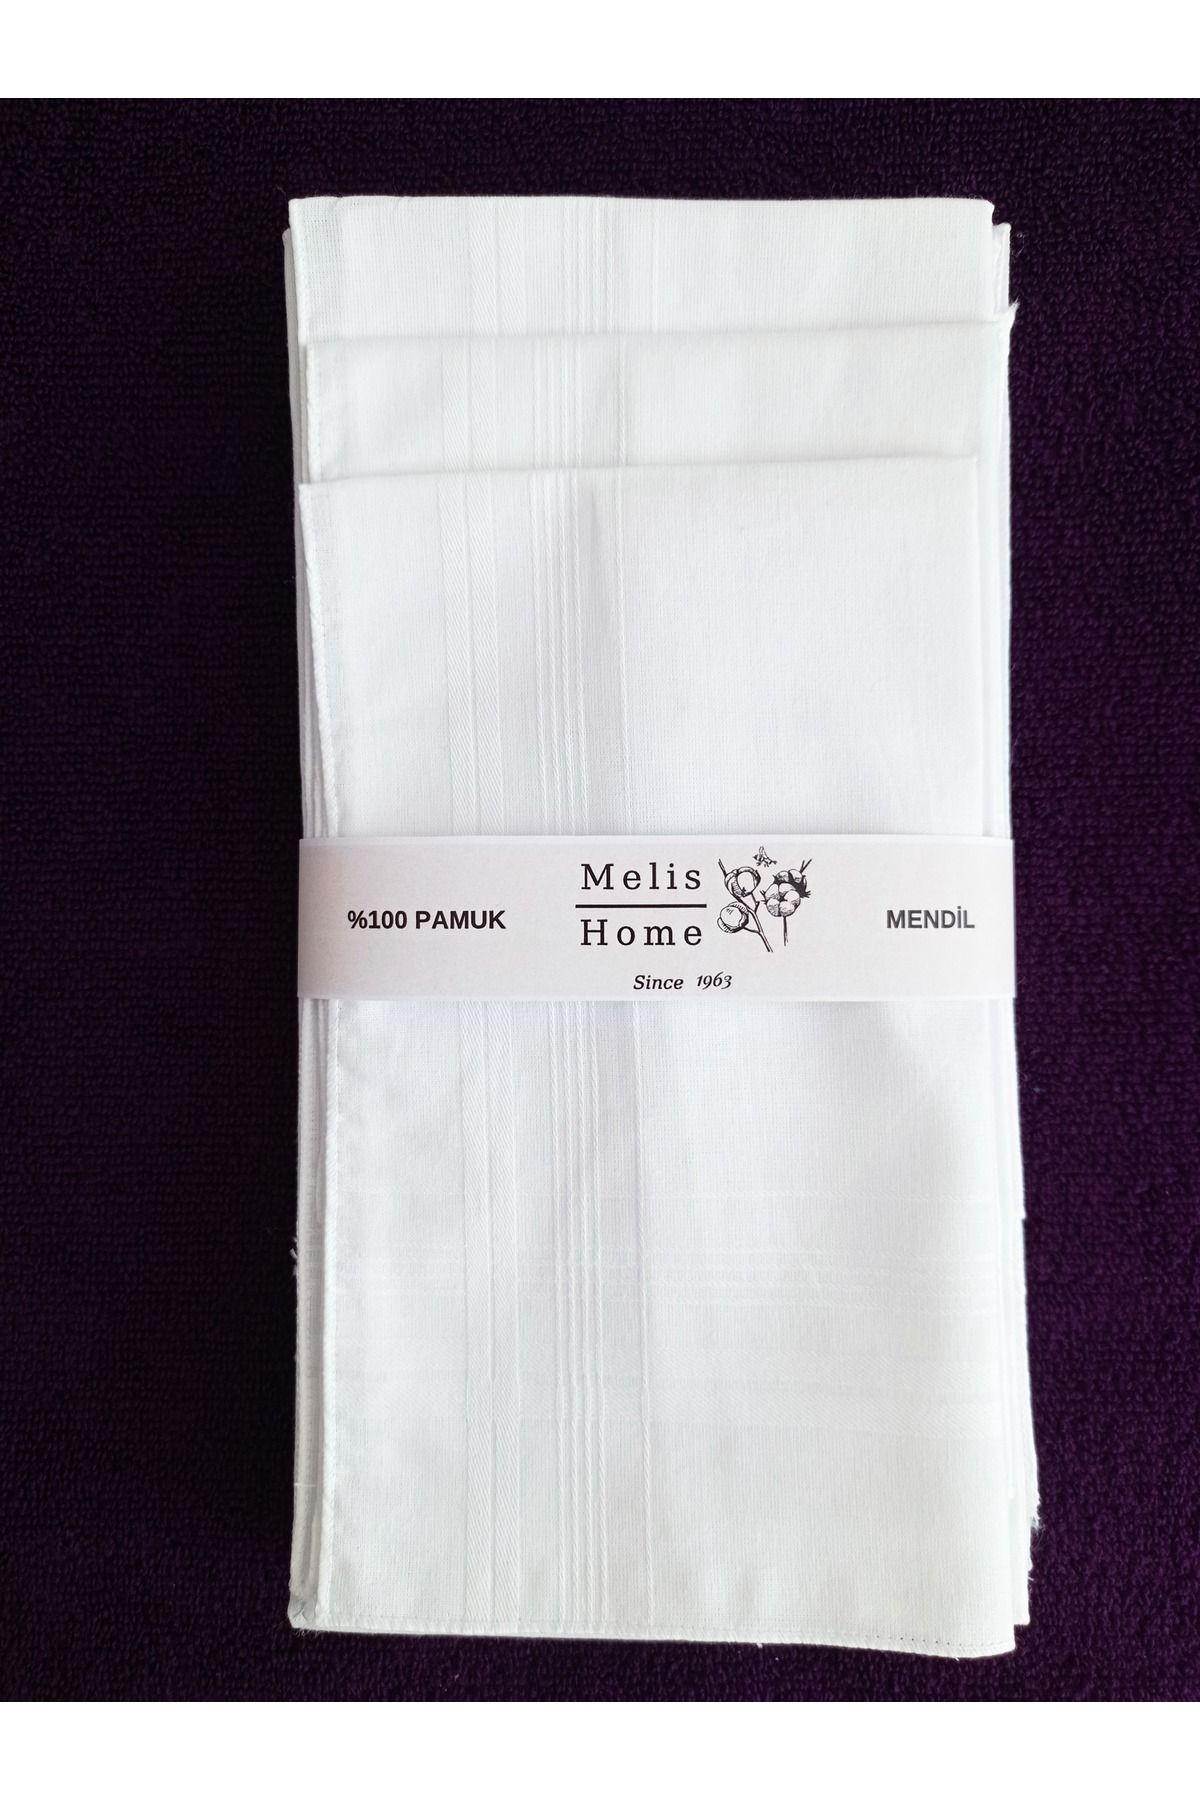 Melis Home Erkek Mendili, 12 Adet 36x36 cm. Beyaz, %100 Pamuk